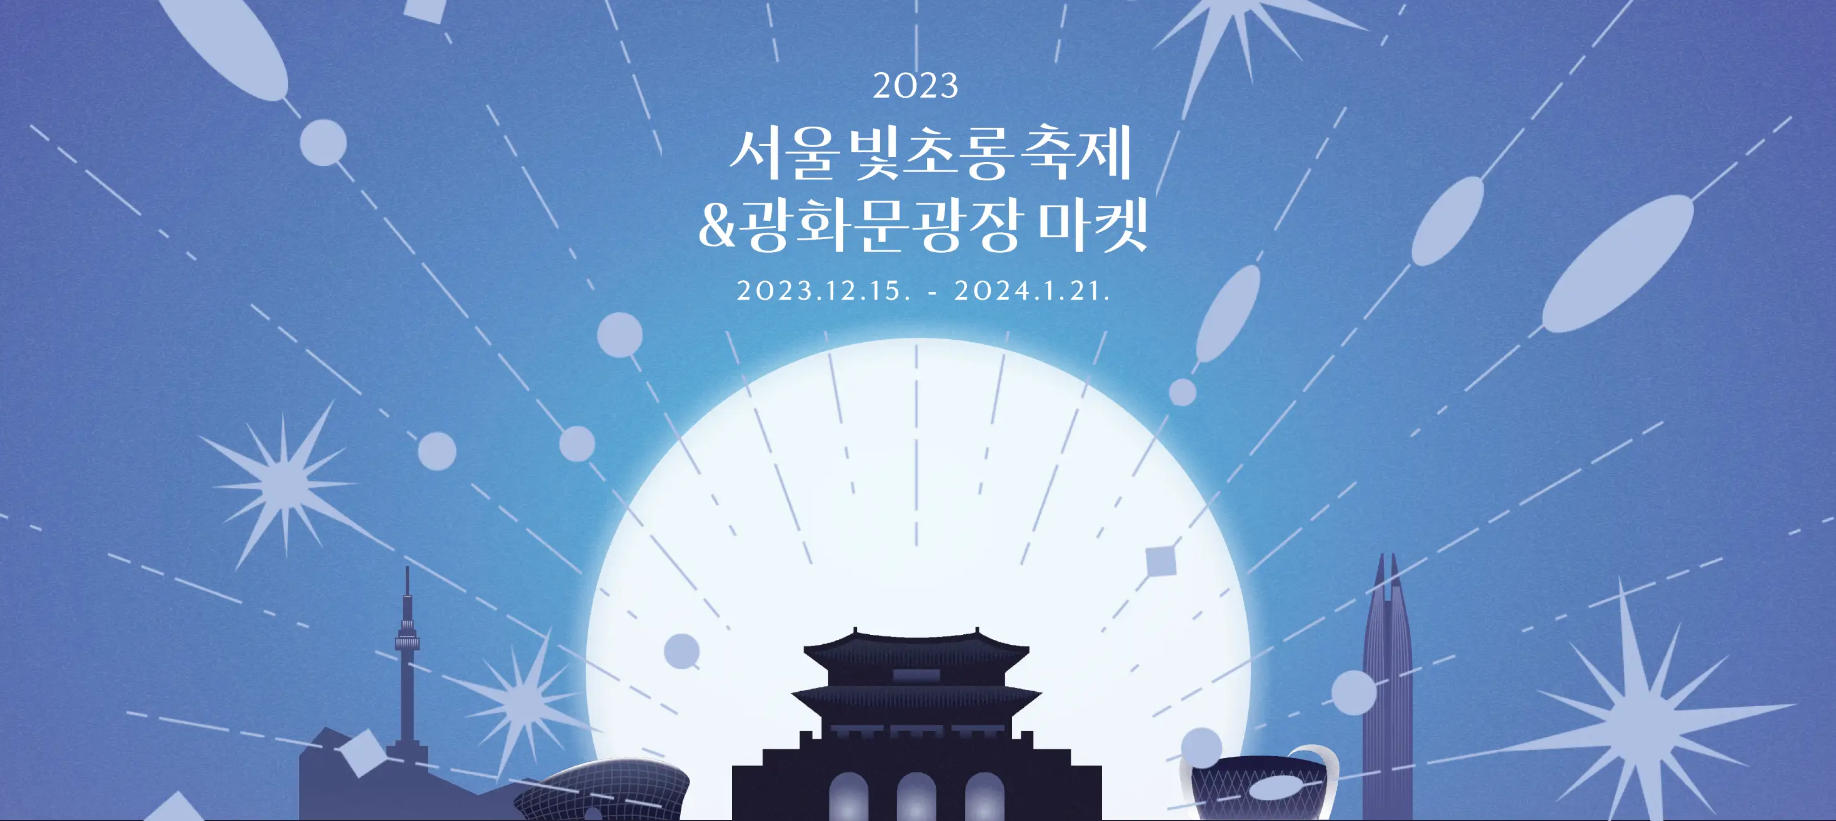 서울빛초롱축제&광화문광장마켓